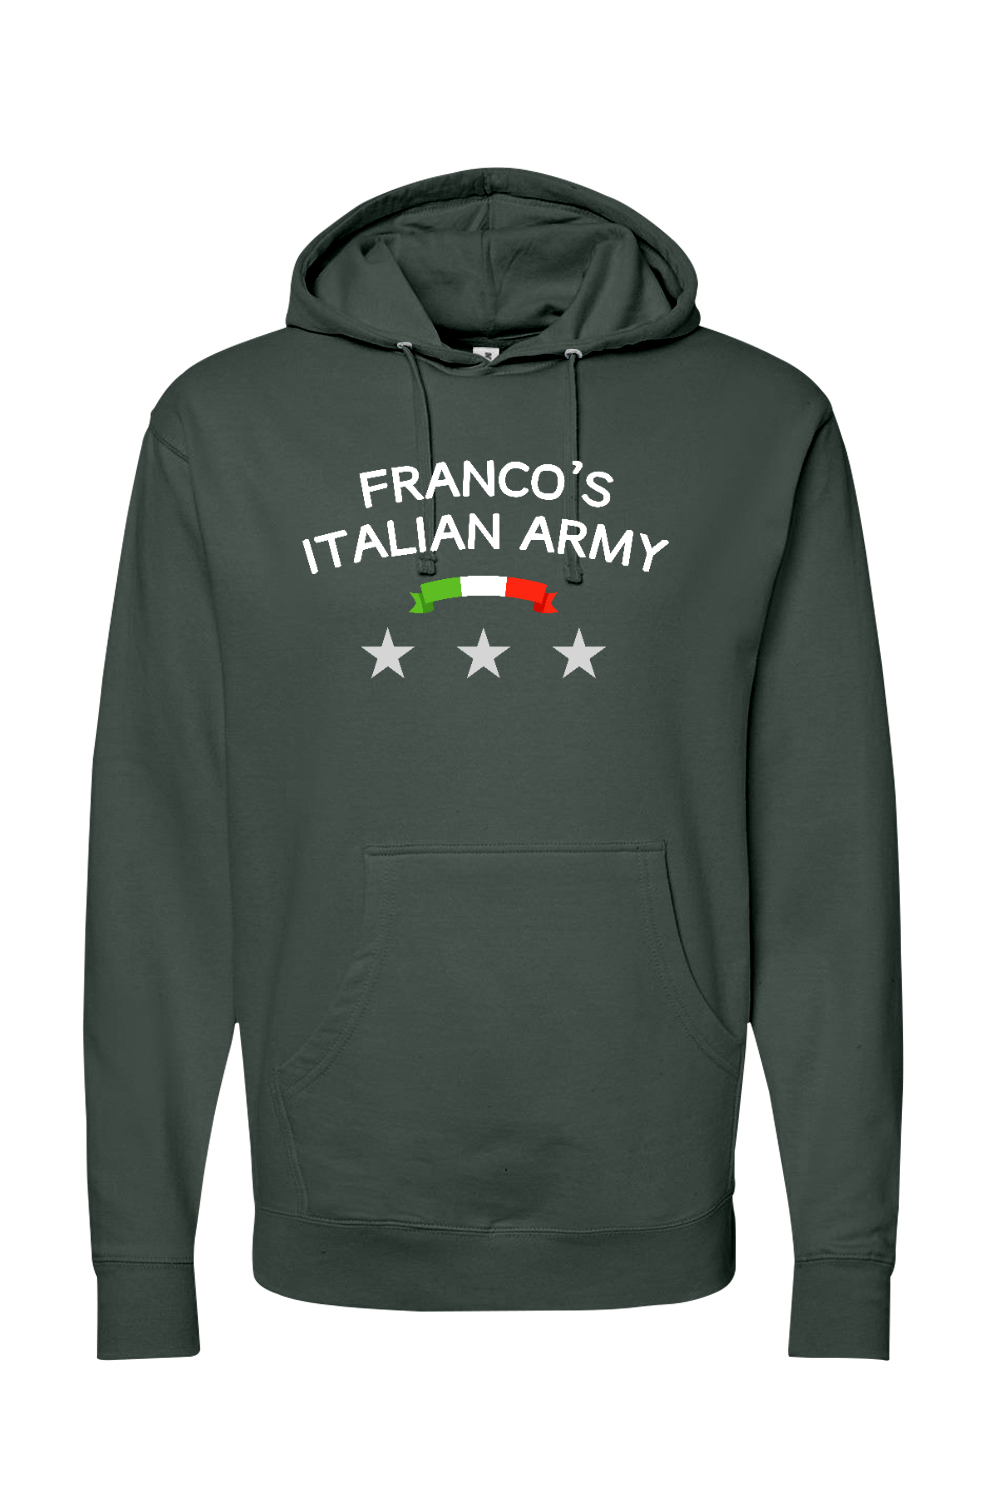 Franco's Italian Army -  Hoodie - Yinzylvania